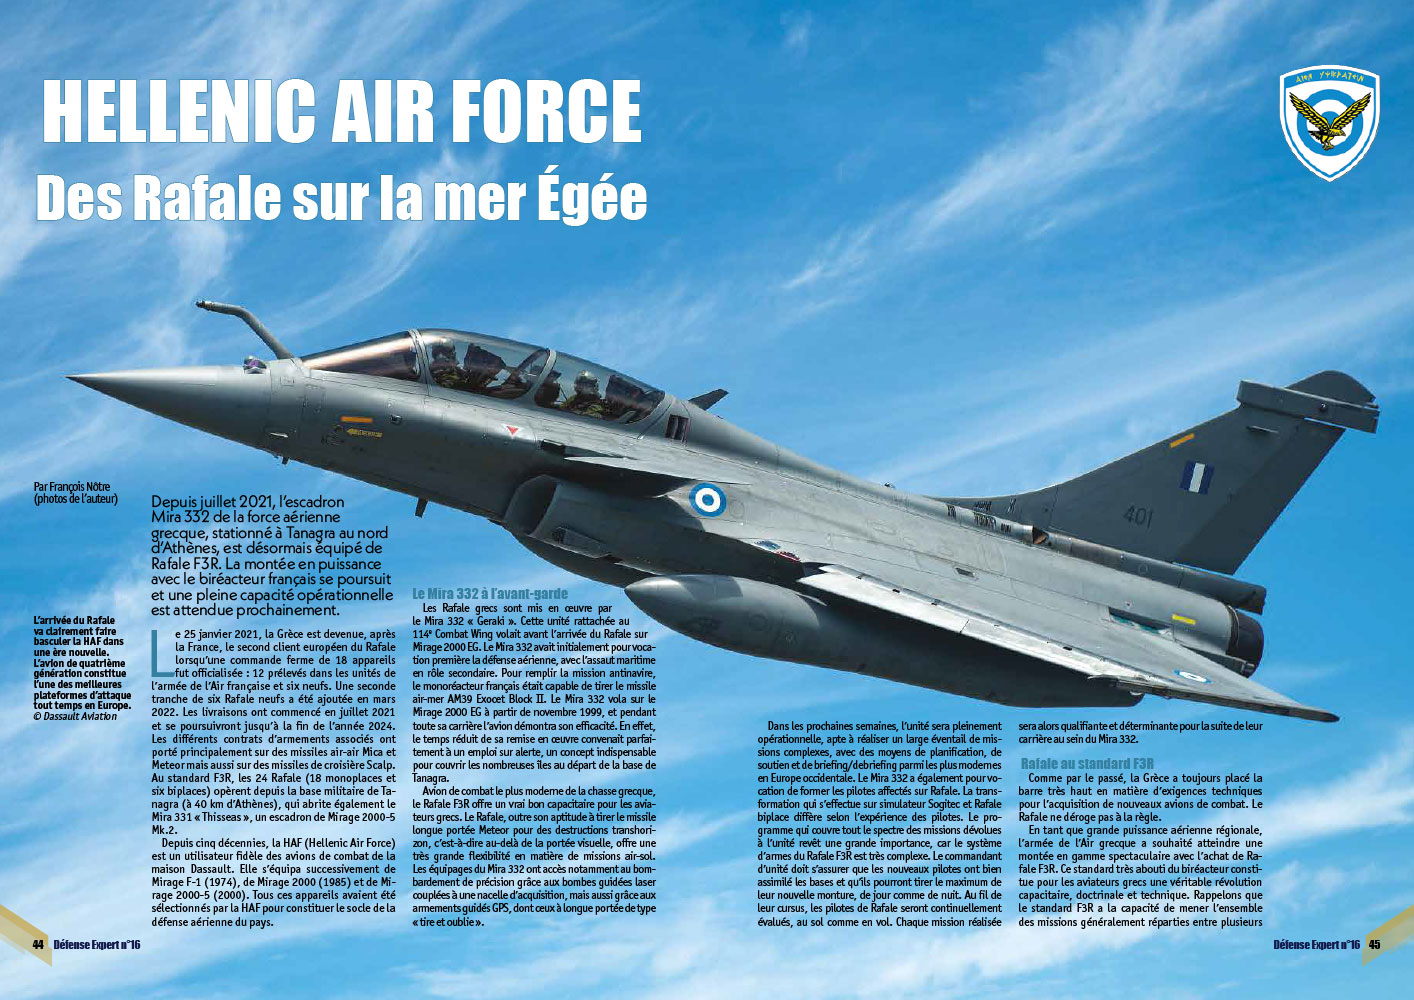 HELLENIC AIR FORCE Des Rafale sur la mer Égée page 44 et 45